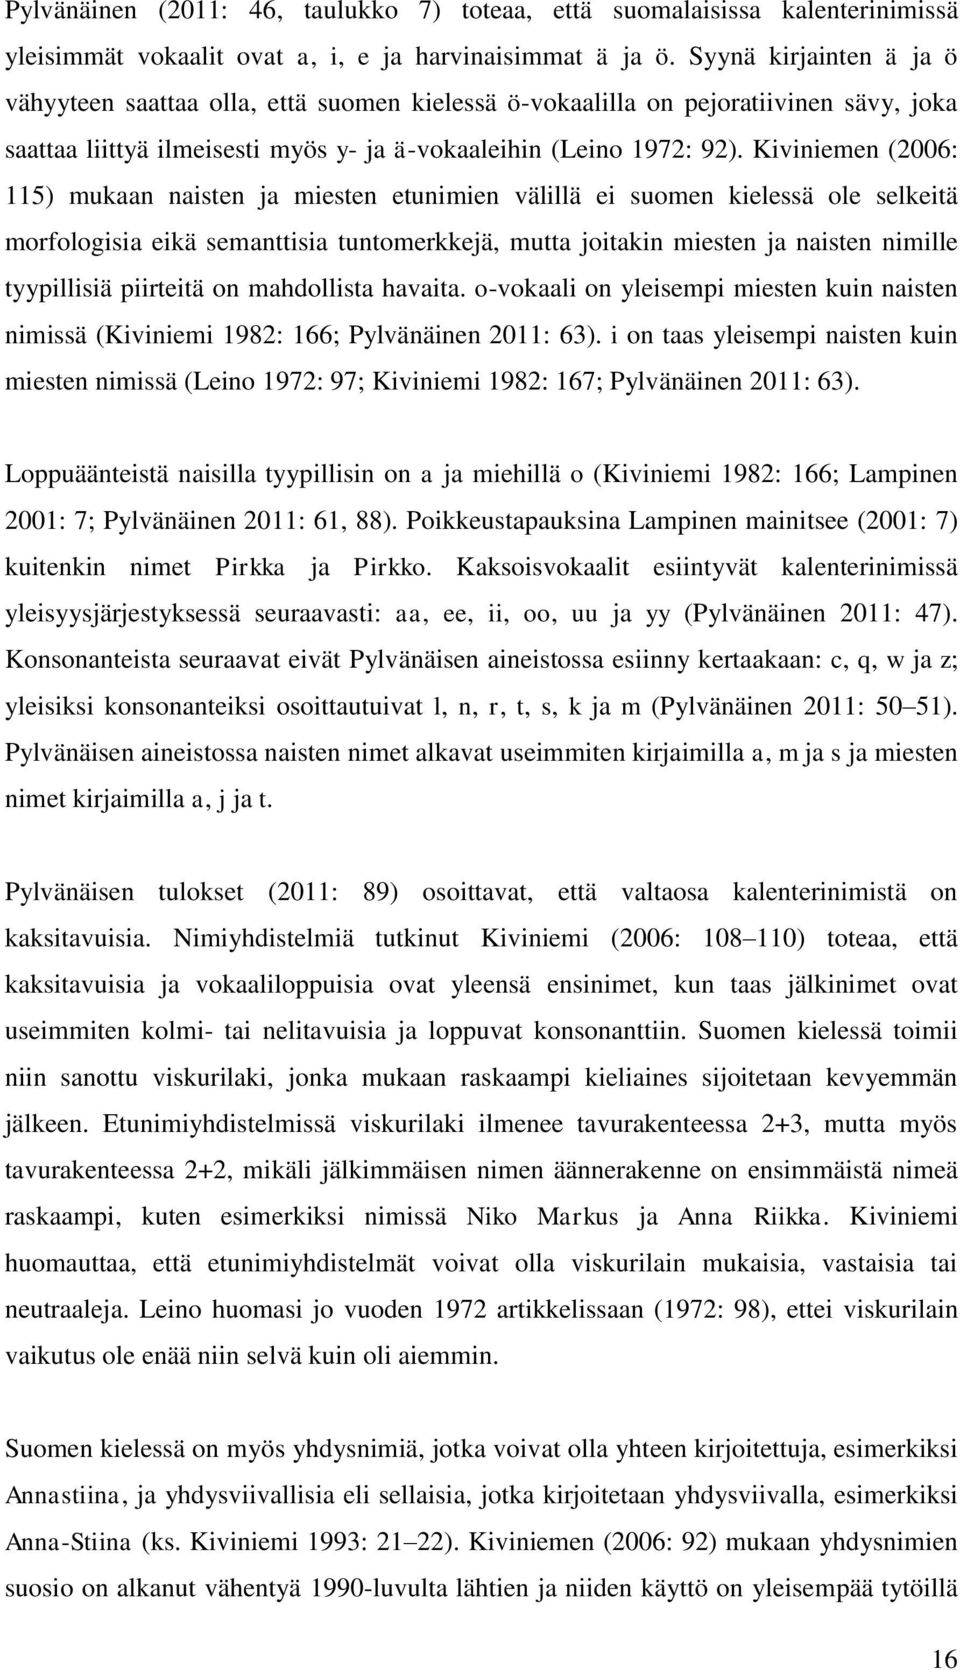 Kiviniemen (2006: 115) mukaan naisten ja miesten etunimien välillä ei suomen kielessä ole selkeitä morfologisia eikä semanttisia tuntomerkkejä, mutta joitakin miesten ja naisten nimille tyypillisiä